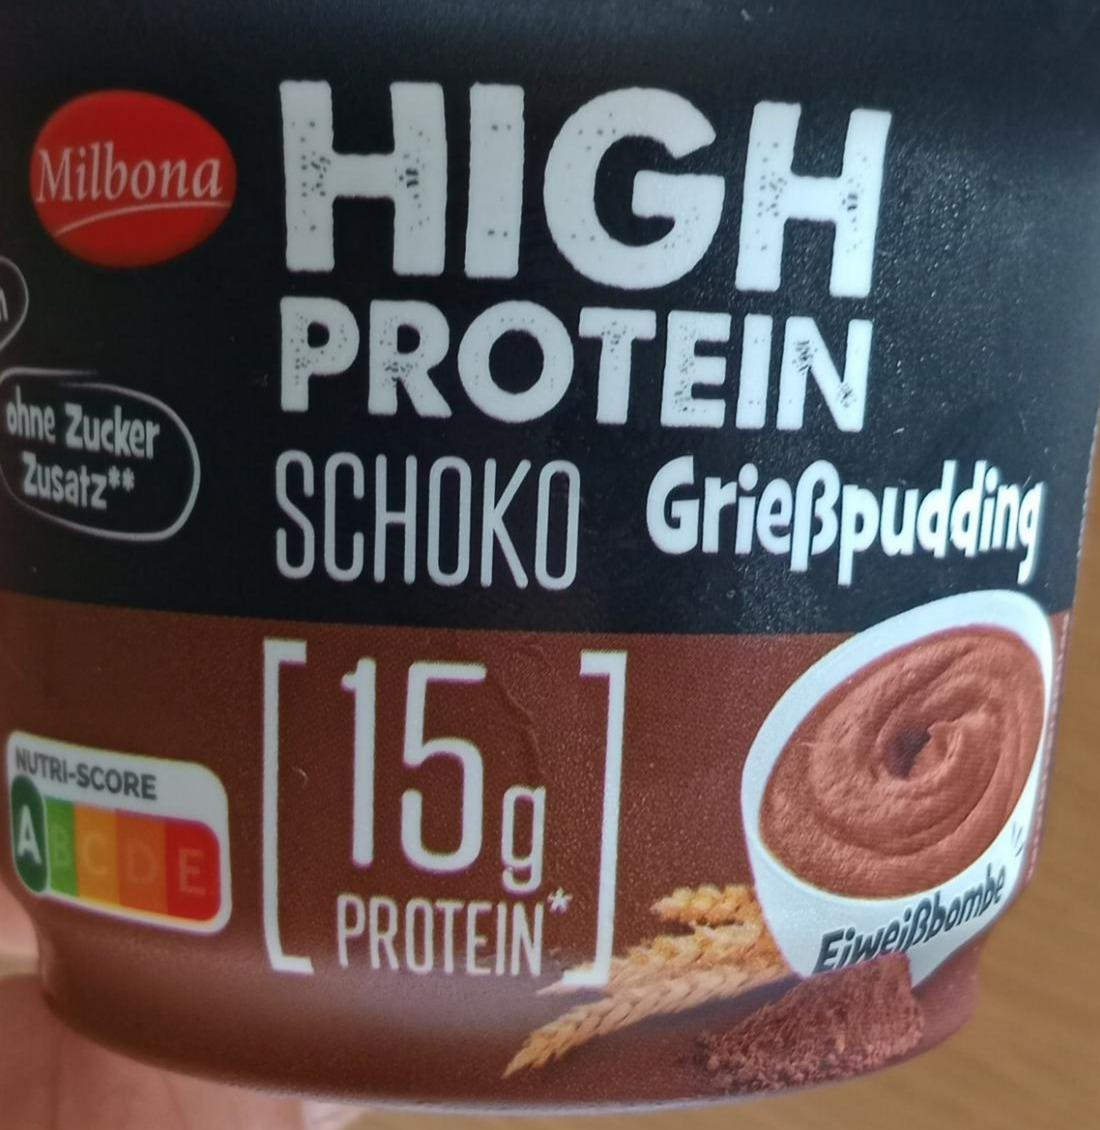 Fotografie - High protein schoko Greisspudding